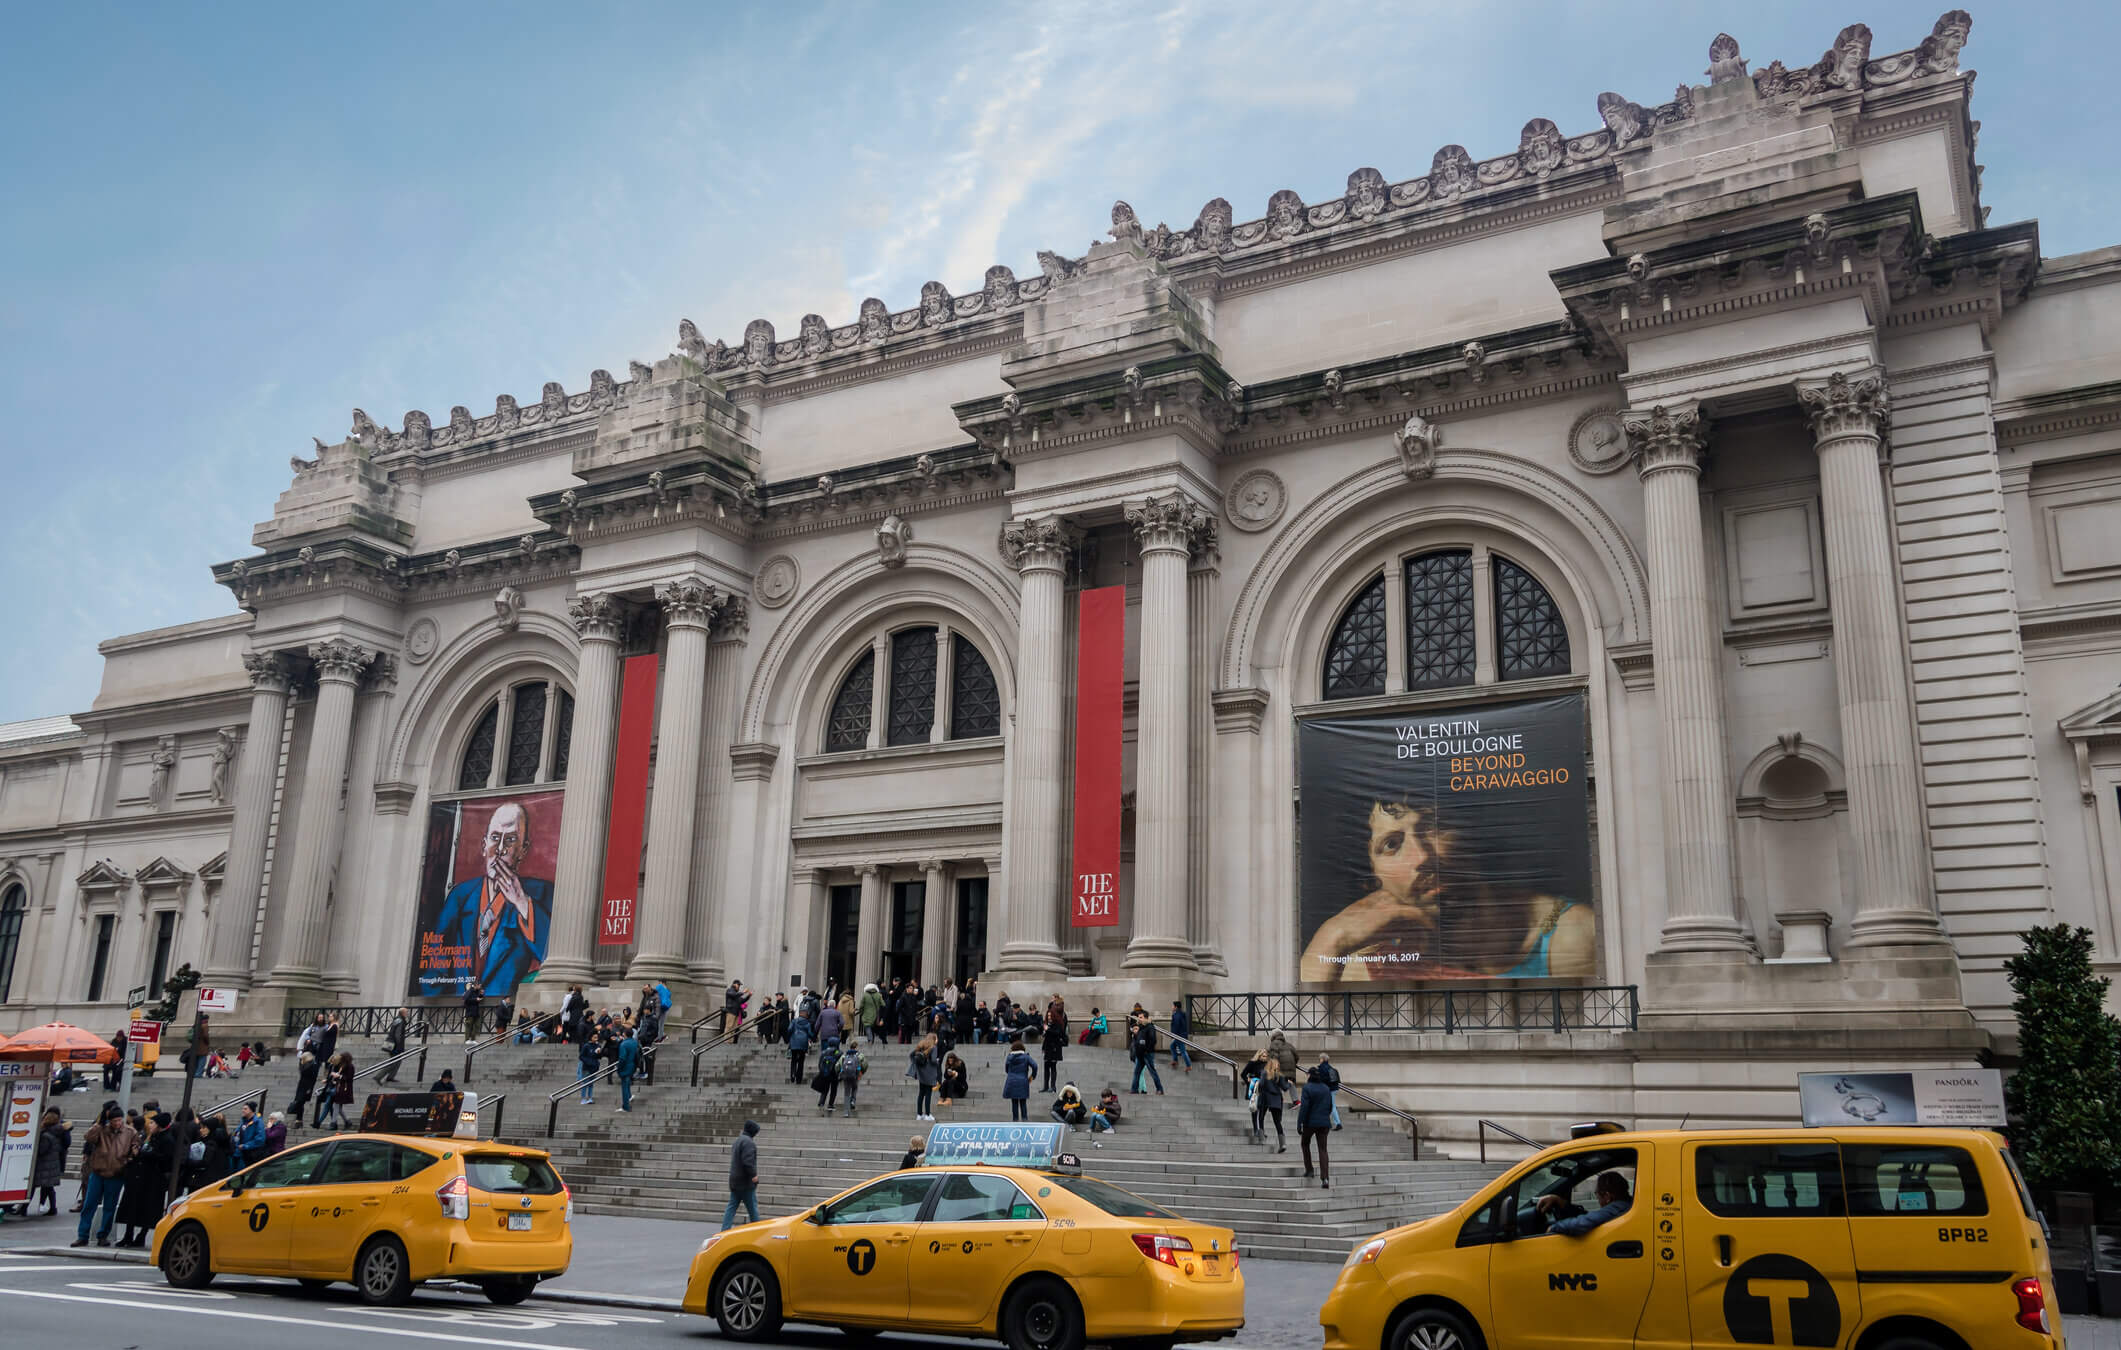 Metropolitan Museum of Art in New York City